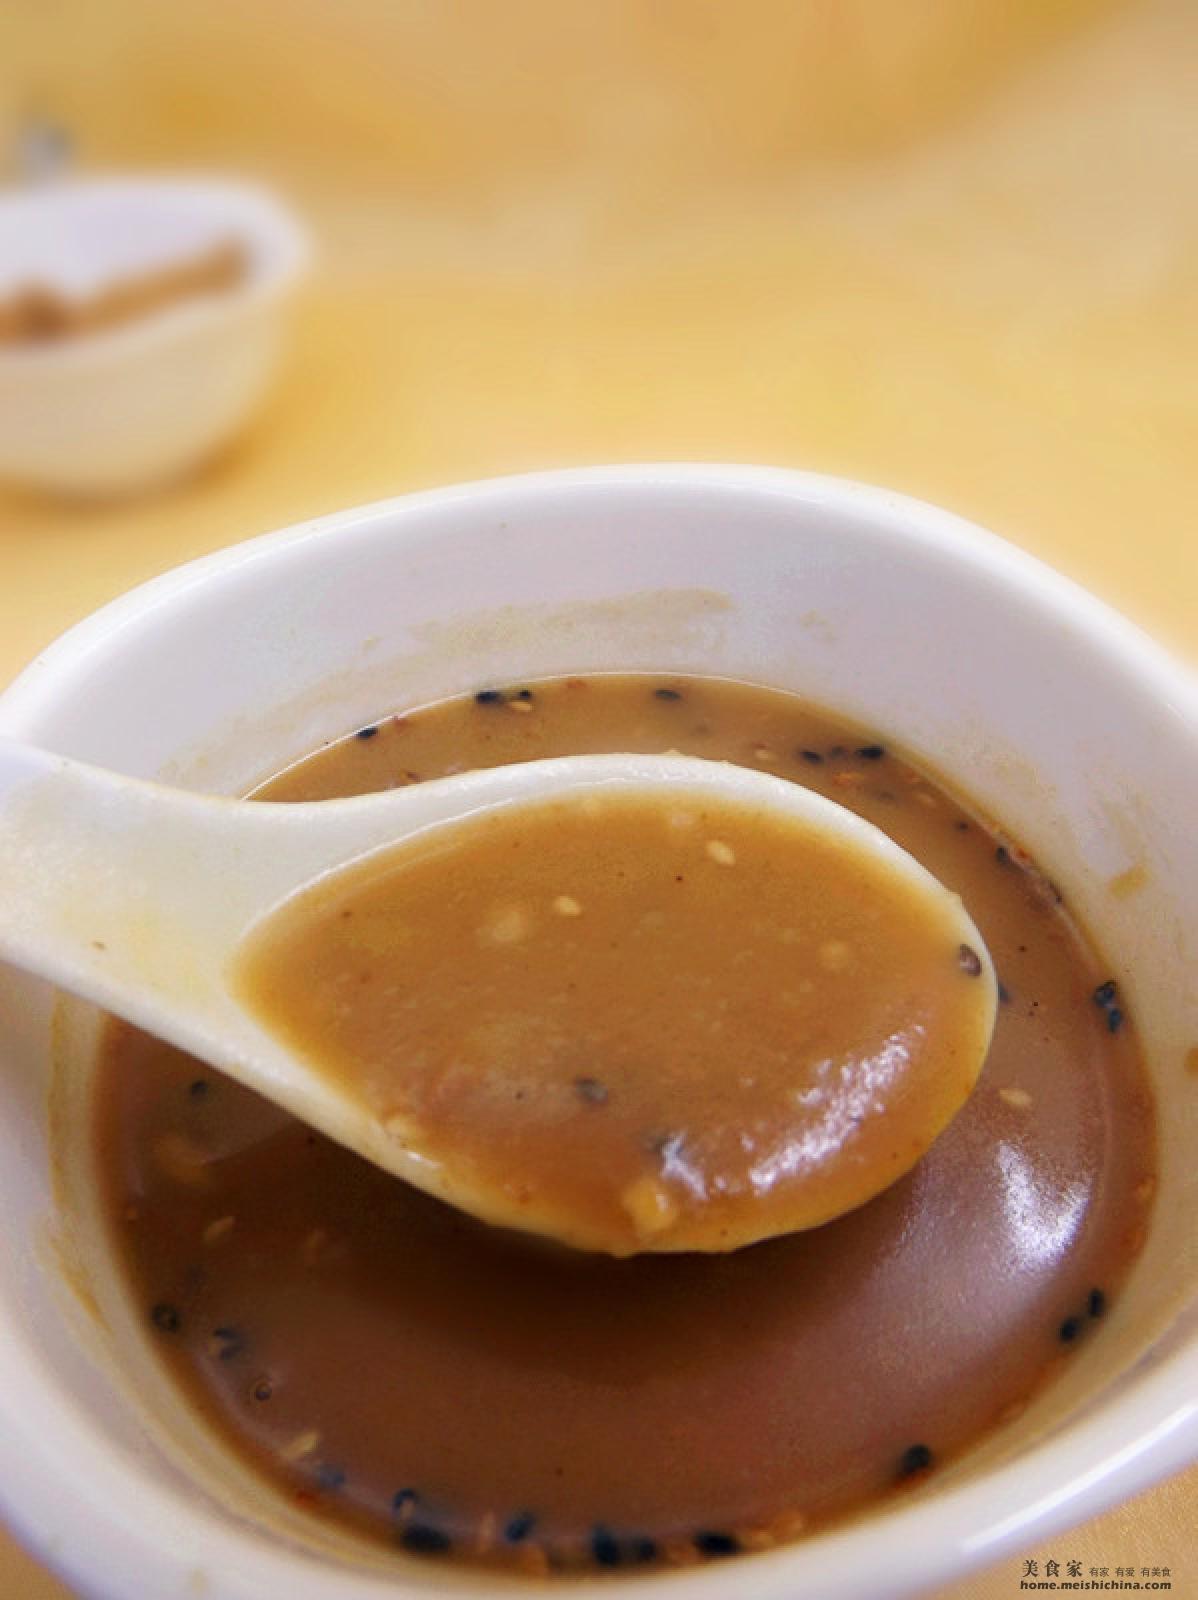 桂林油茶正成饮食文化新地标-桂林生活网新闻中心